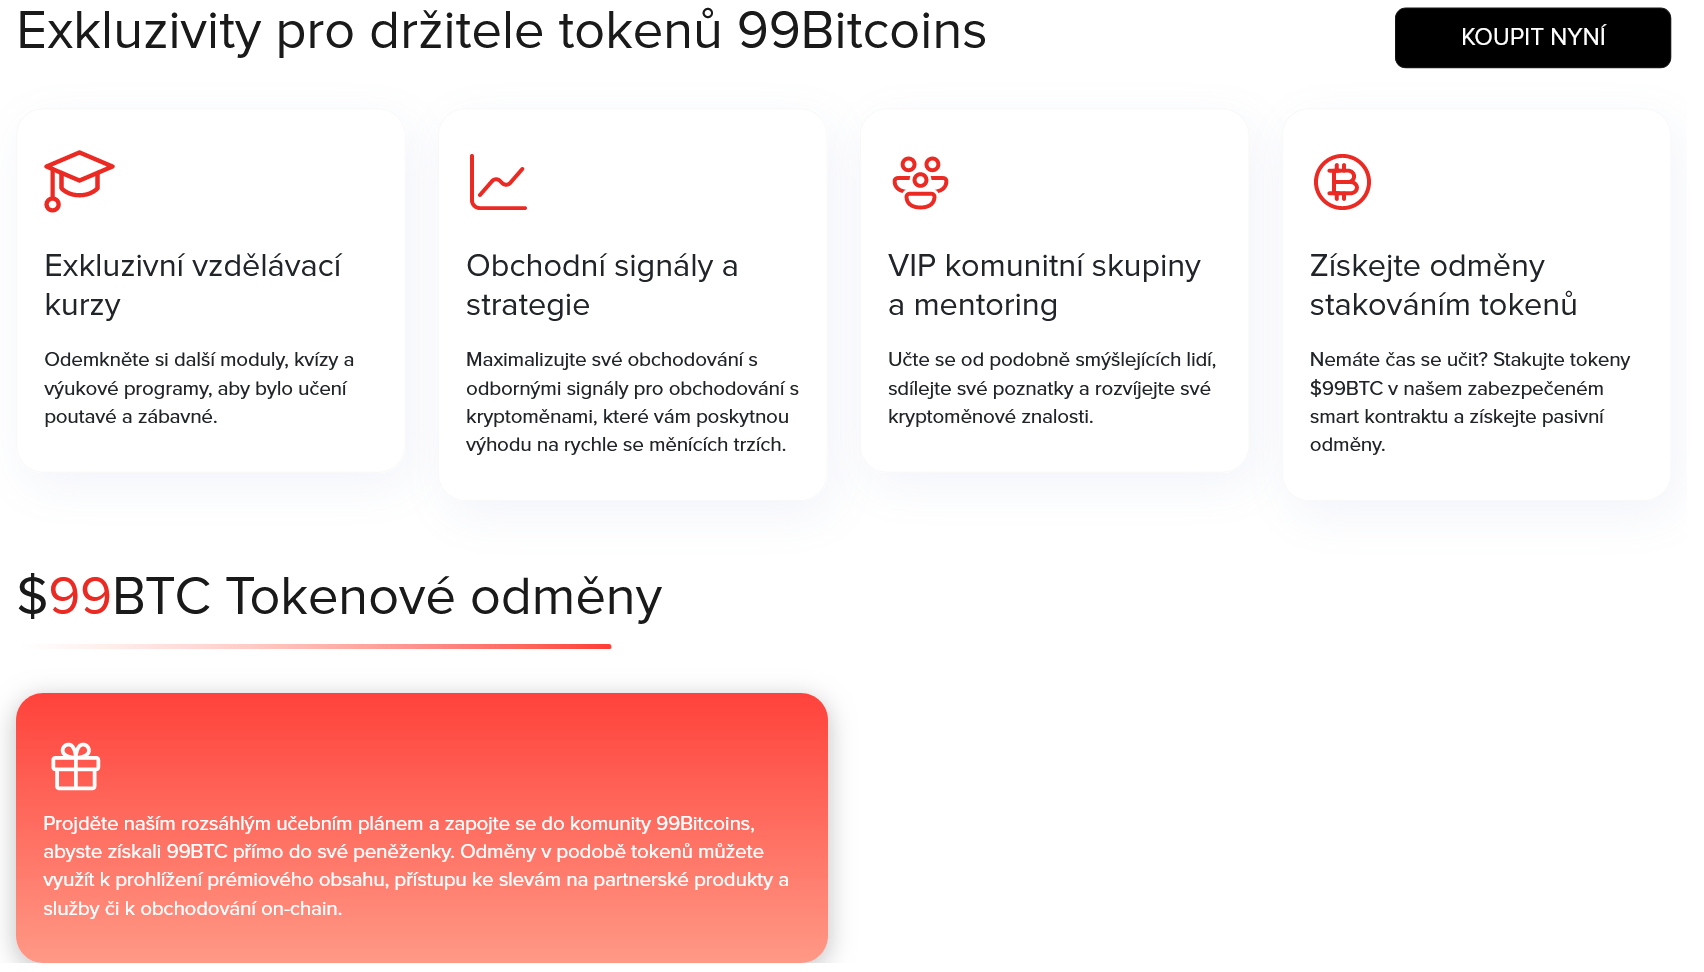 Exkluzivity projektu 99Bitcoins, což je nová kryptoměna s mechanismem learn to trade, kterou lze označit za kryptoměnu budoucnosti